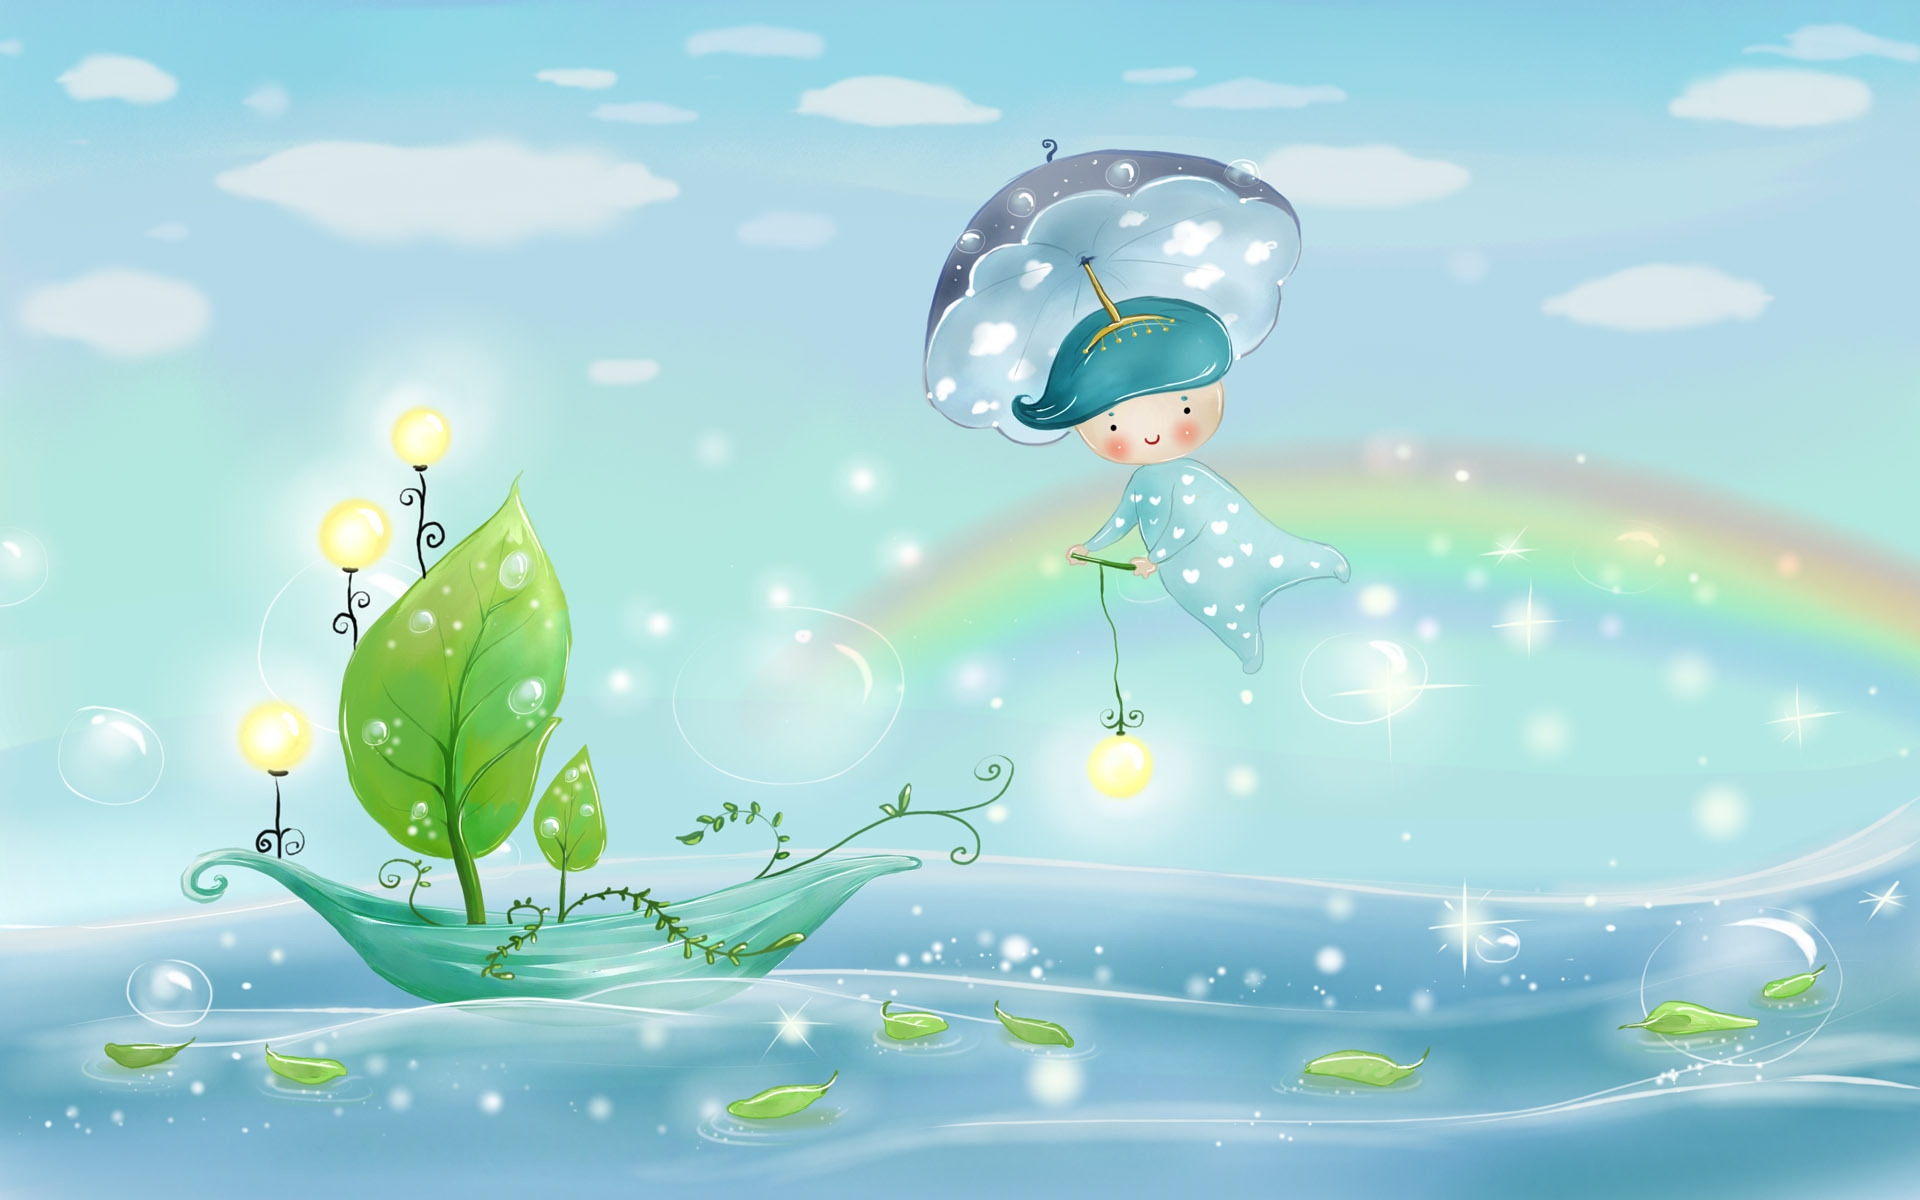 Картинки Вода, дождь, зонтик, листья, лодка, мальчик, море, небо, паруса, погода, природа, пузыри, радуга, узор, свет, облака, огни фото и обои на рабочий стол